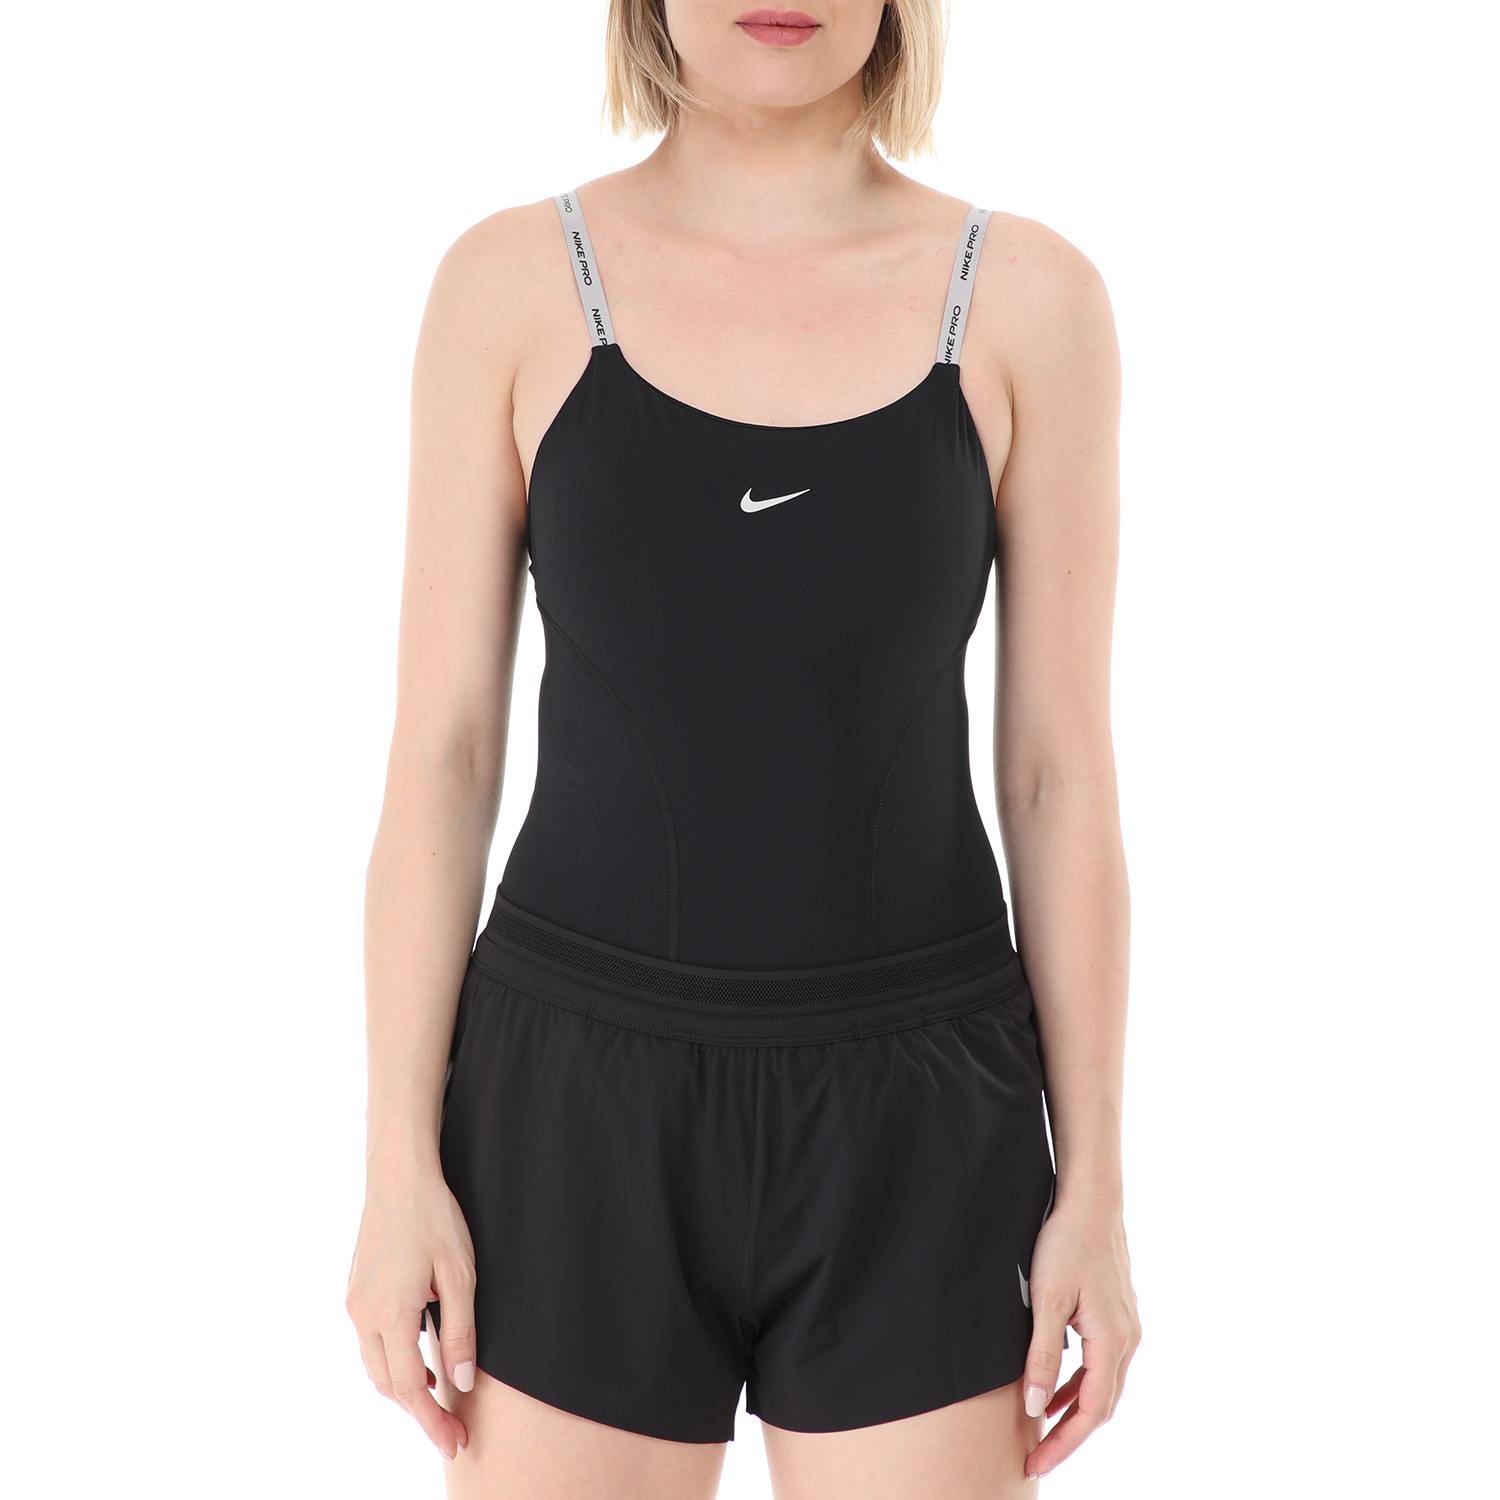 Γυναικεία/Ρούχα/Αθλητικά/T-shirt-Τοπ NIKE - Γυναικείο αθλητικό κορμάκι NIke NP CAPSULE BODYSUIT μαύρο